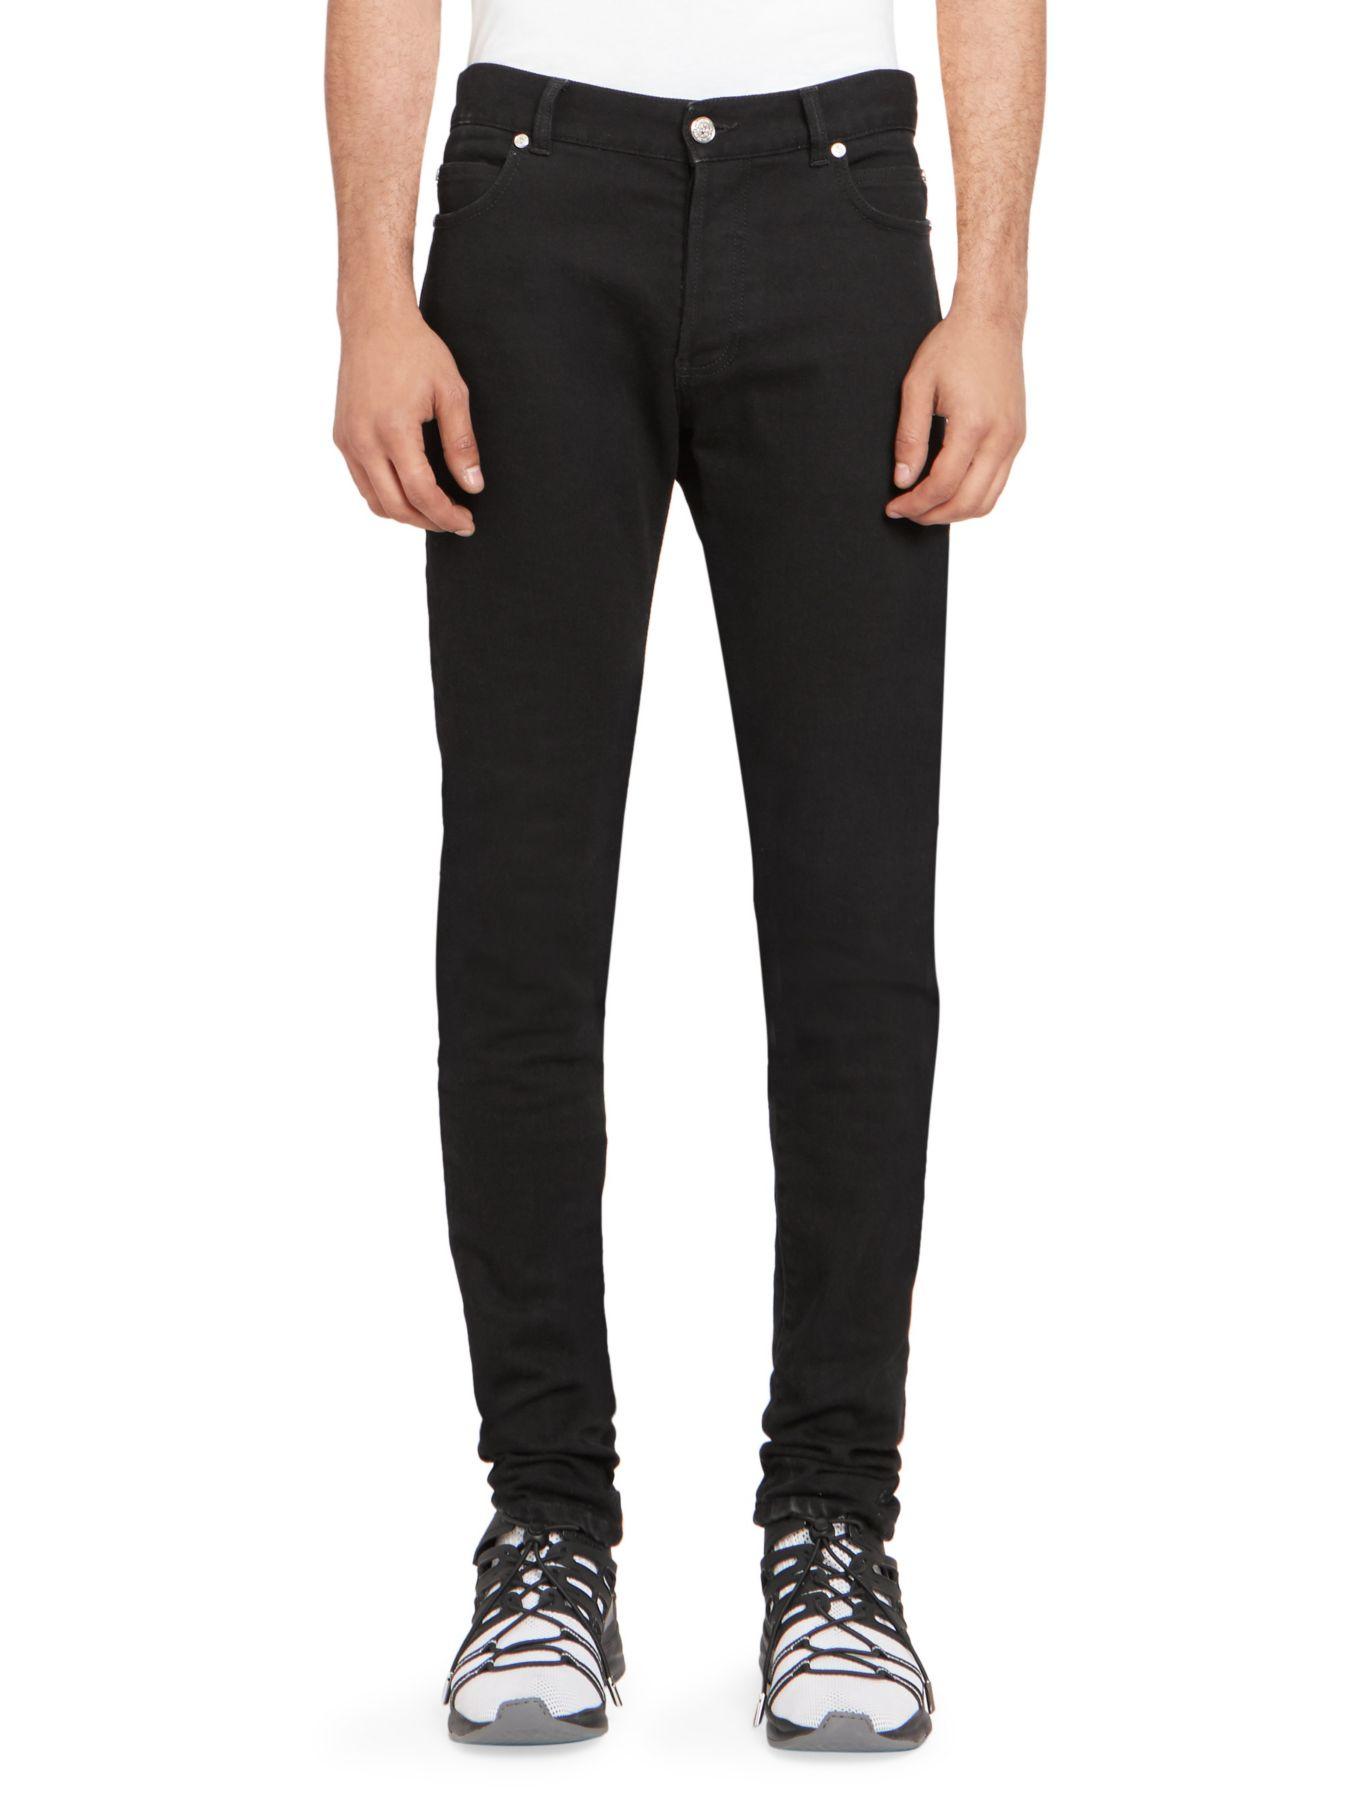 Balmain Tapered Denim Jeans in Black for Men - Lyst